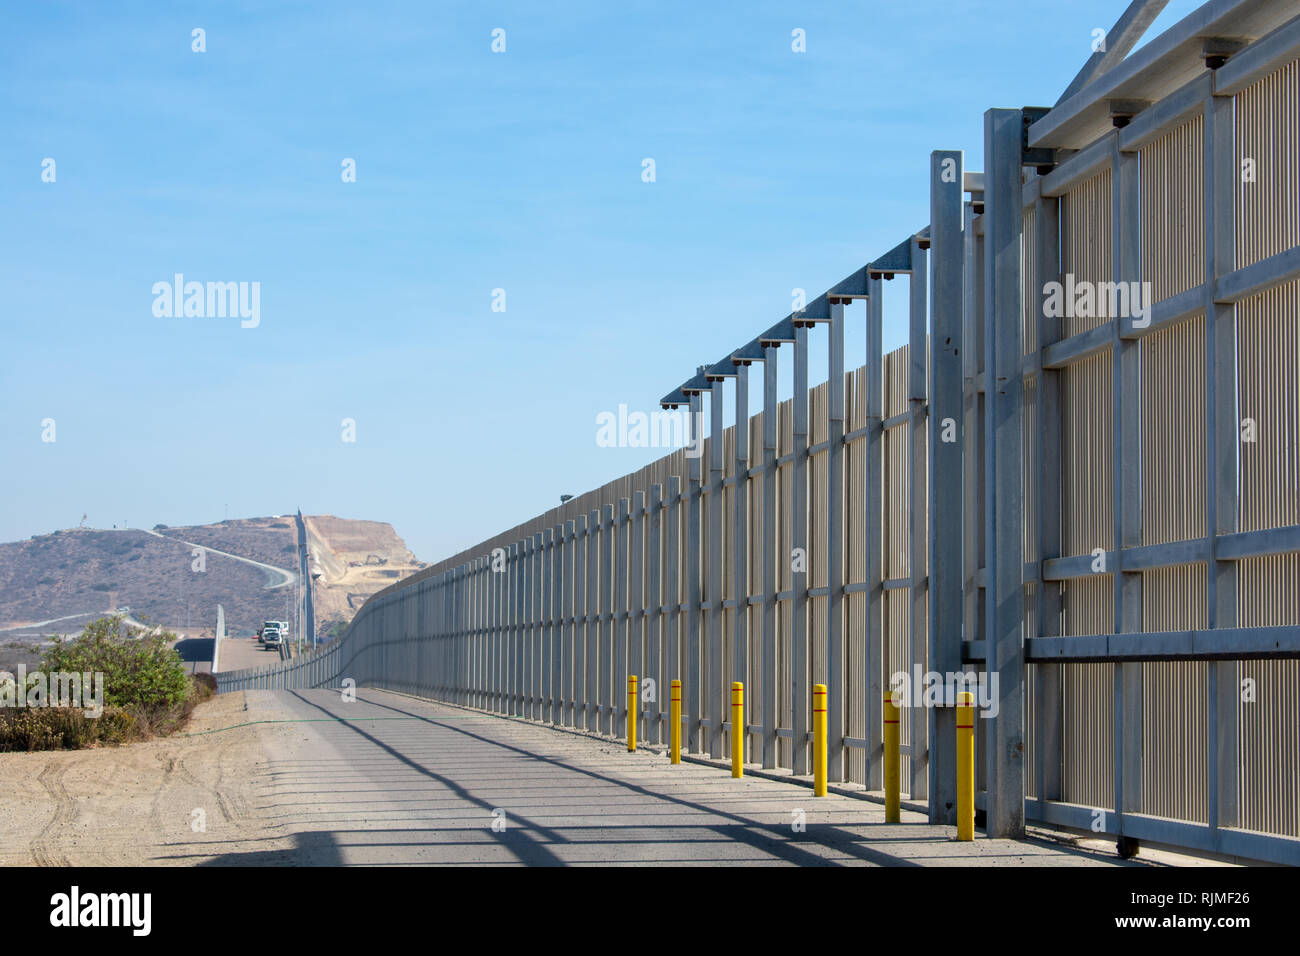 Die grenzmauer auf die Vereinigten Staaten und Mexiko internationale Grenze in der Nähe von San Diego in Kalifornien unter blauem Himmel Stockfoto